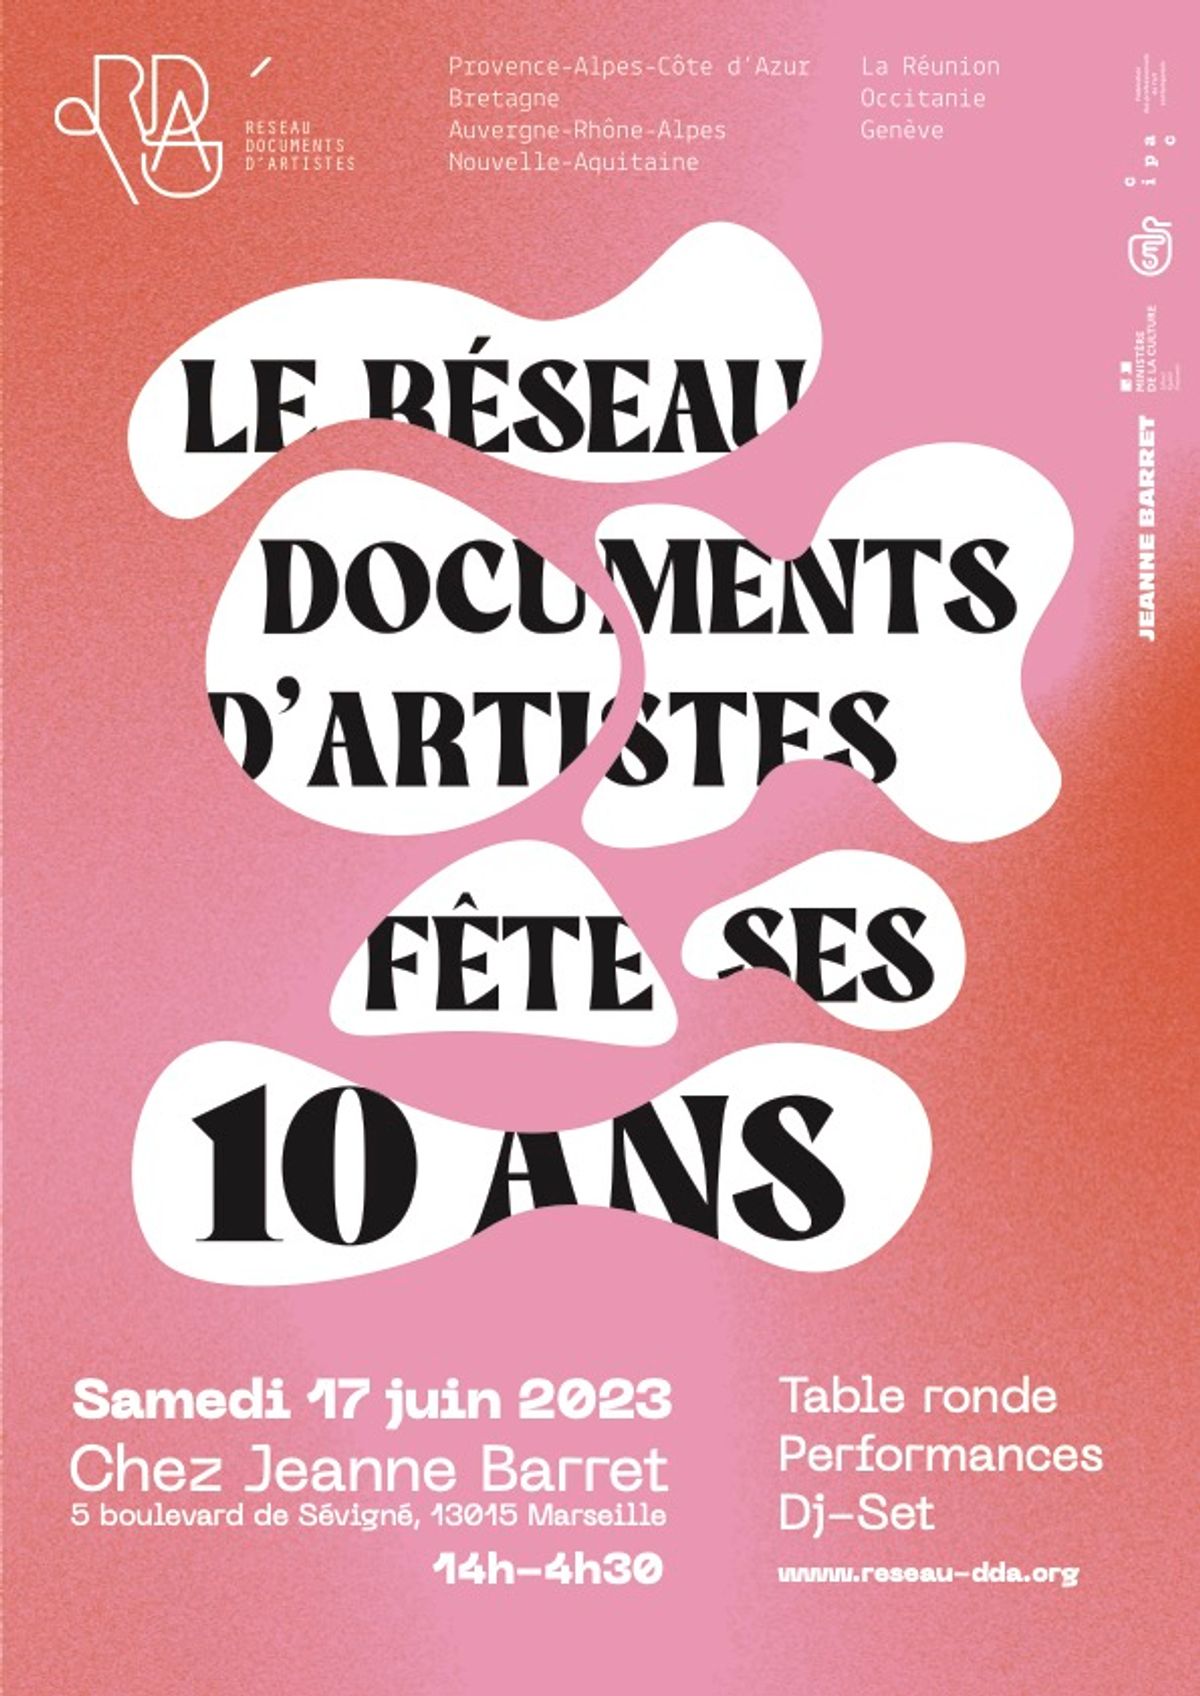 Le Réseau documents d’artistes célèbrera ses 10 ans chez Jeanne Barret, à Marseille, le 17 juin 2023. Réseau documents d’artistes